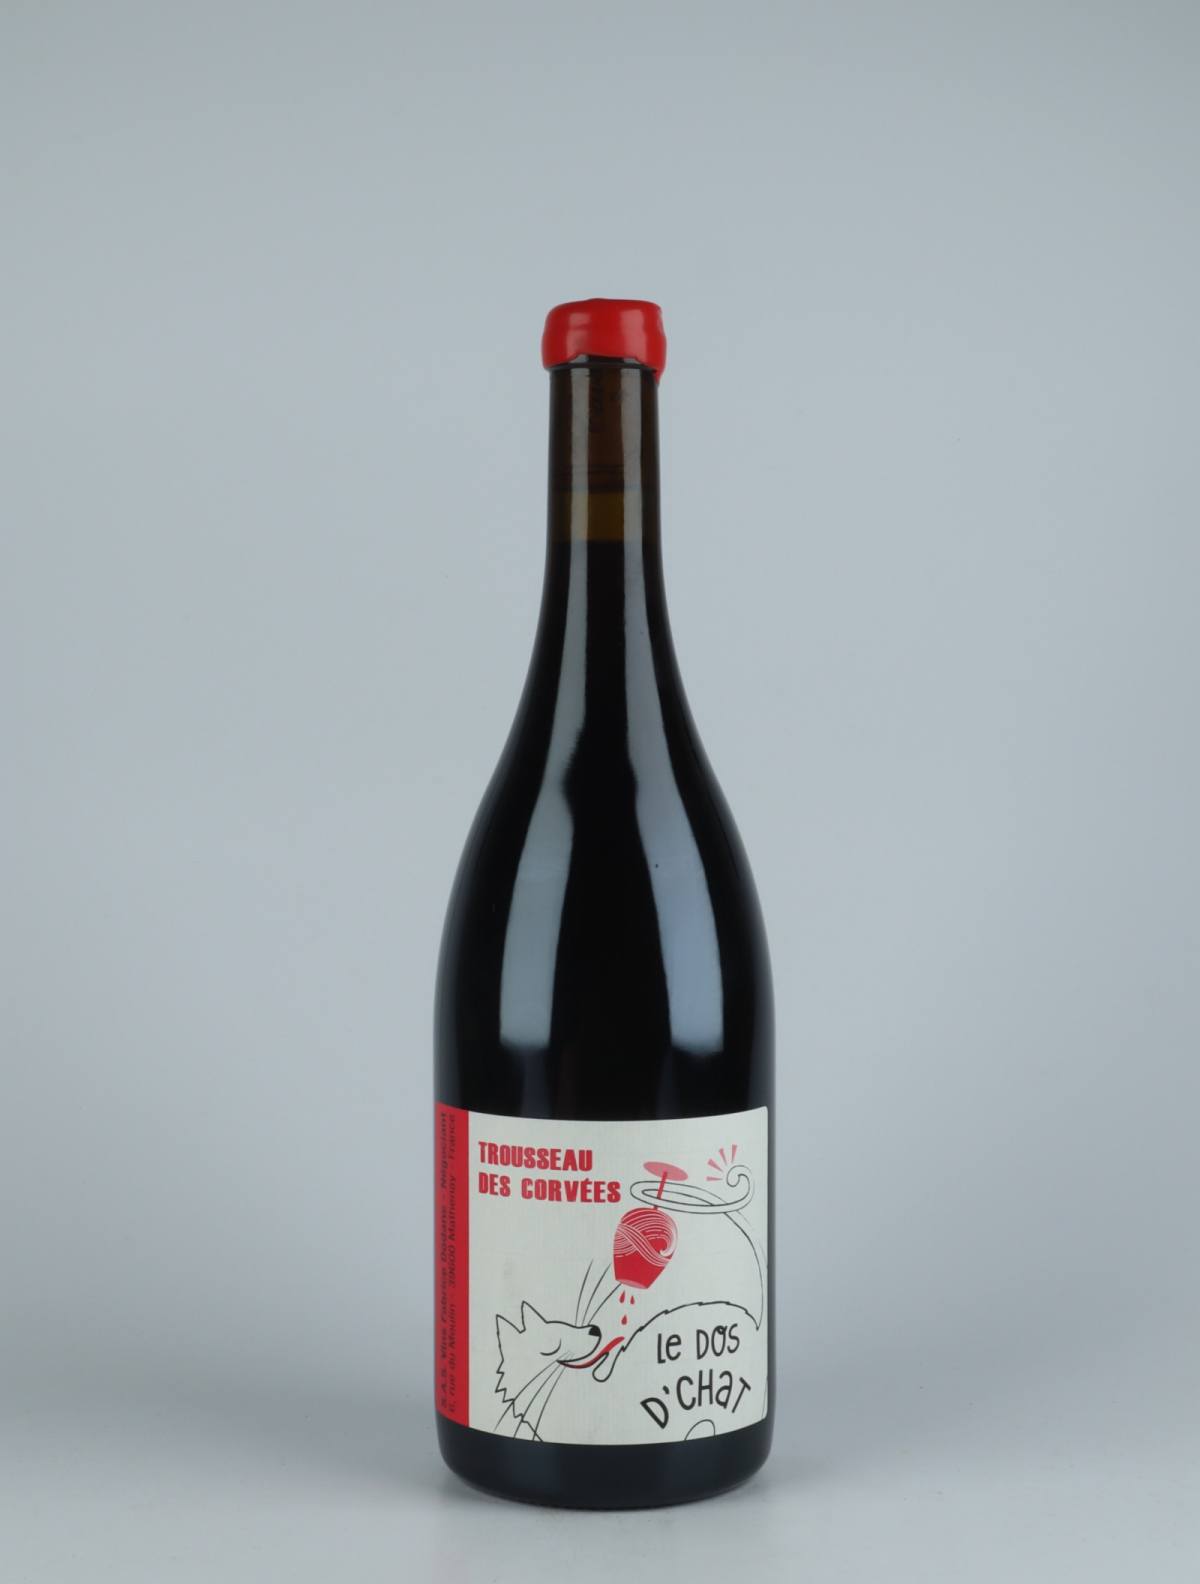 En flaske 2019 Trousseau des Corvées Rødvin fra Fabrice Dodane, Jura i Frankrig